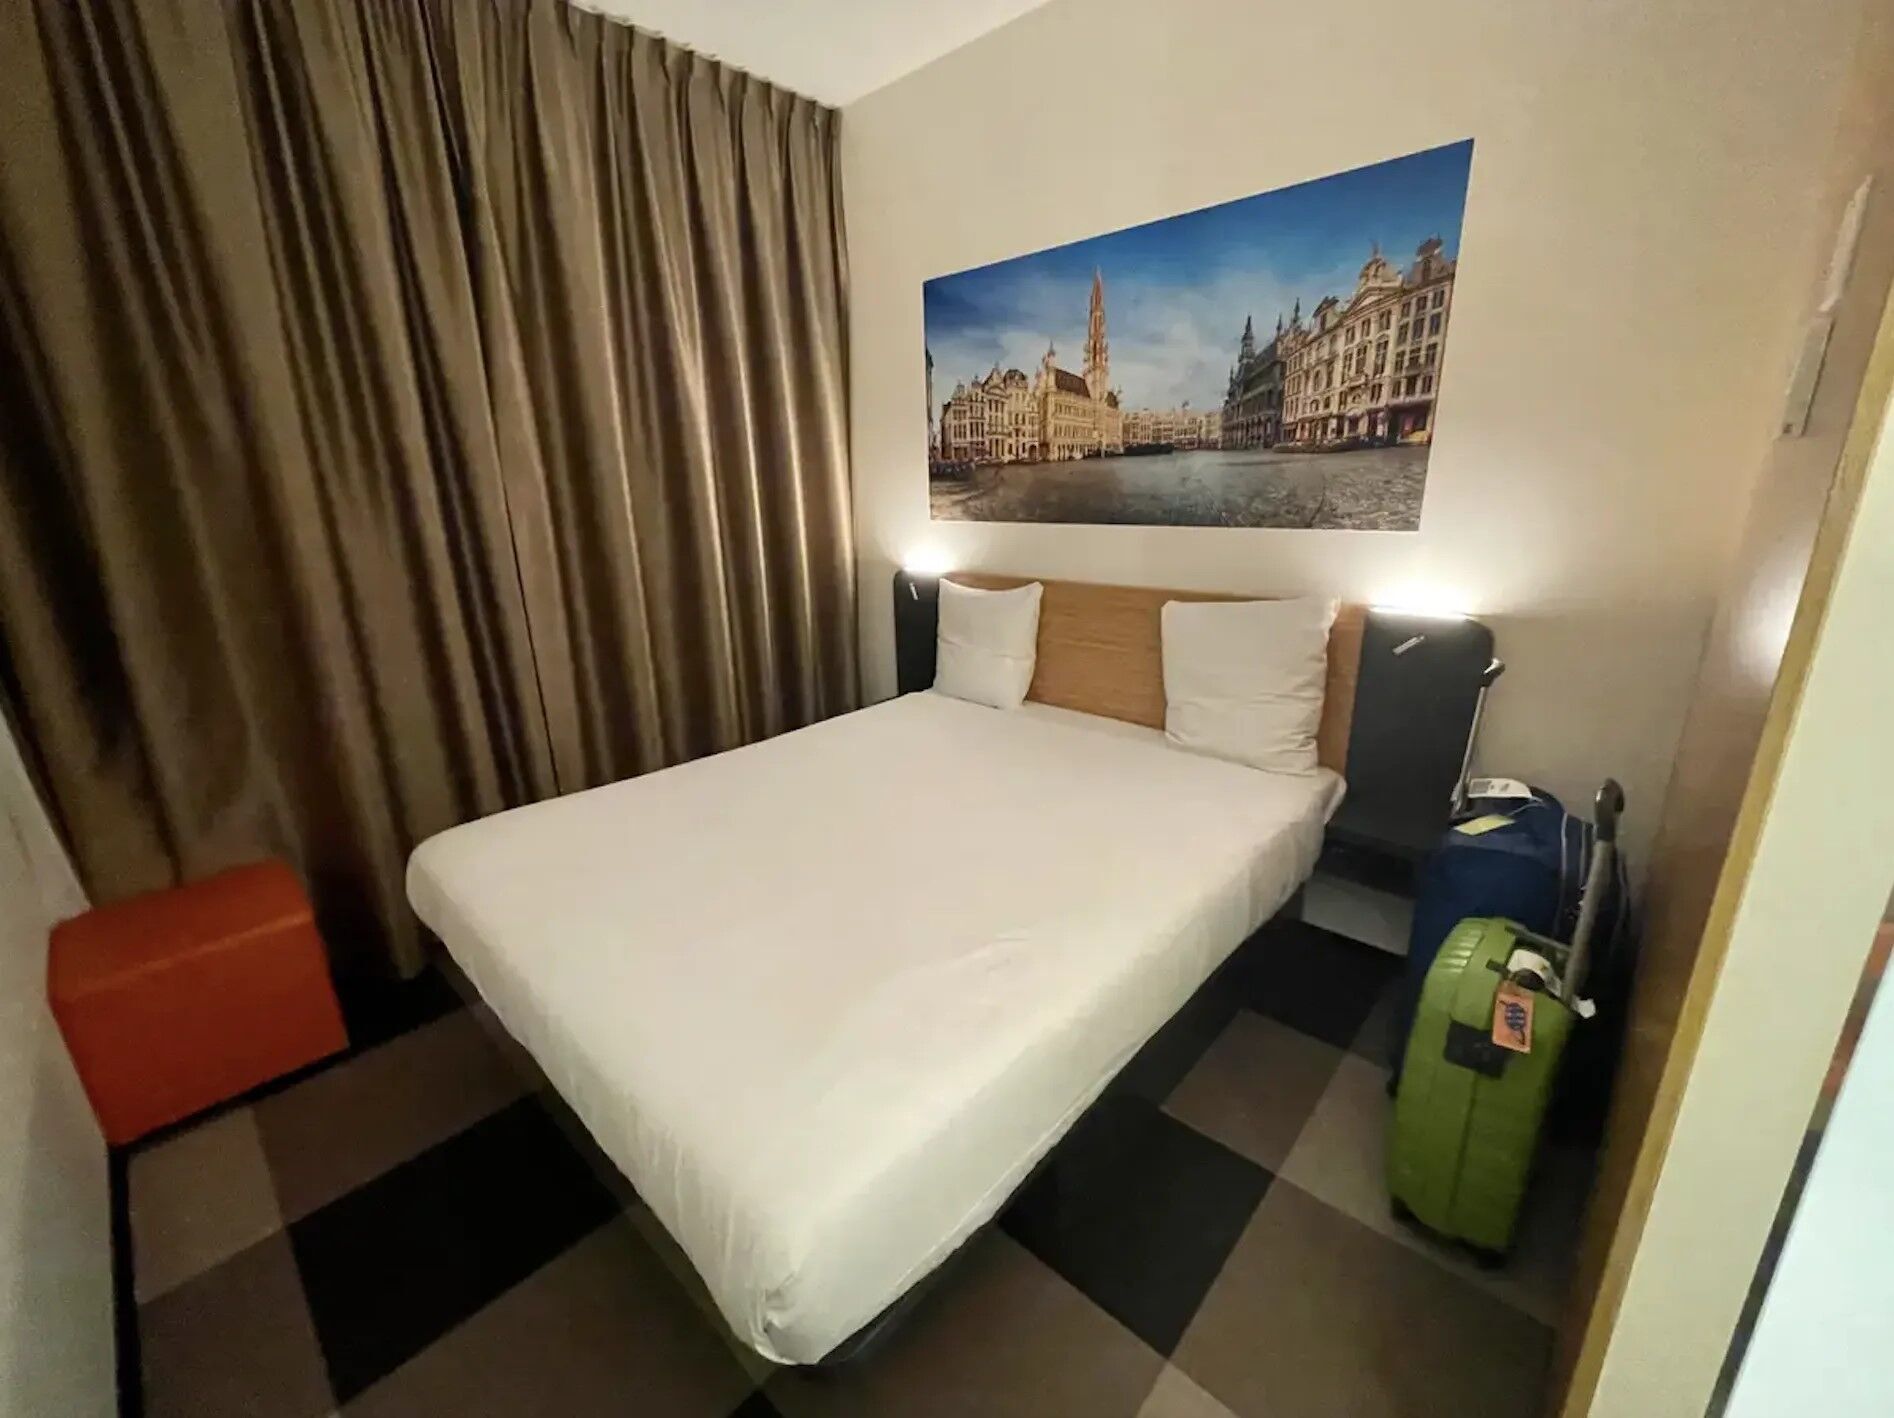 $347 против $125 за ночь: путешественница назвала три причины, почему бюджетная гостиница ей понравилась больше